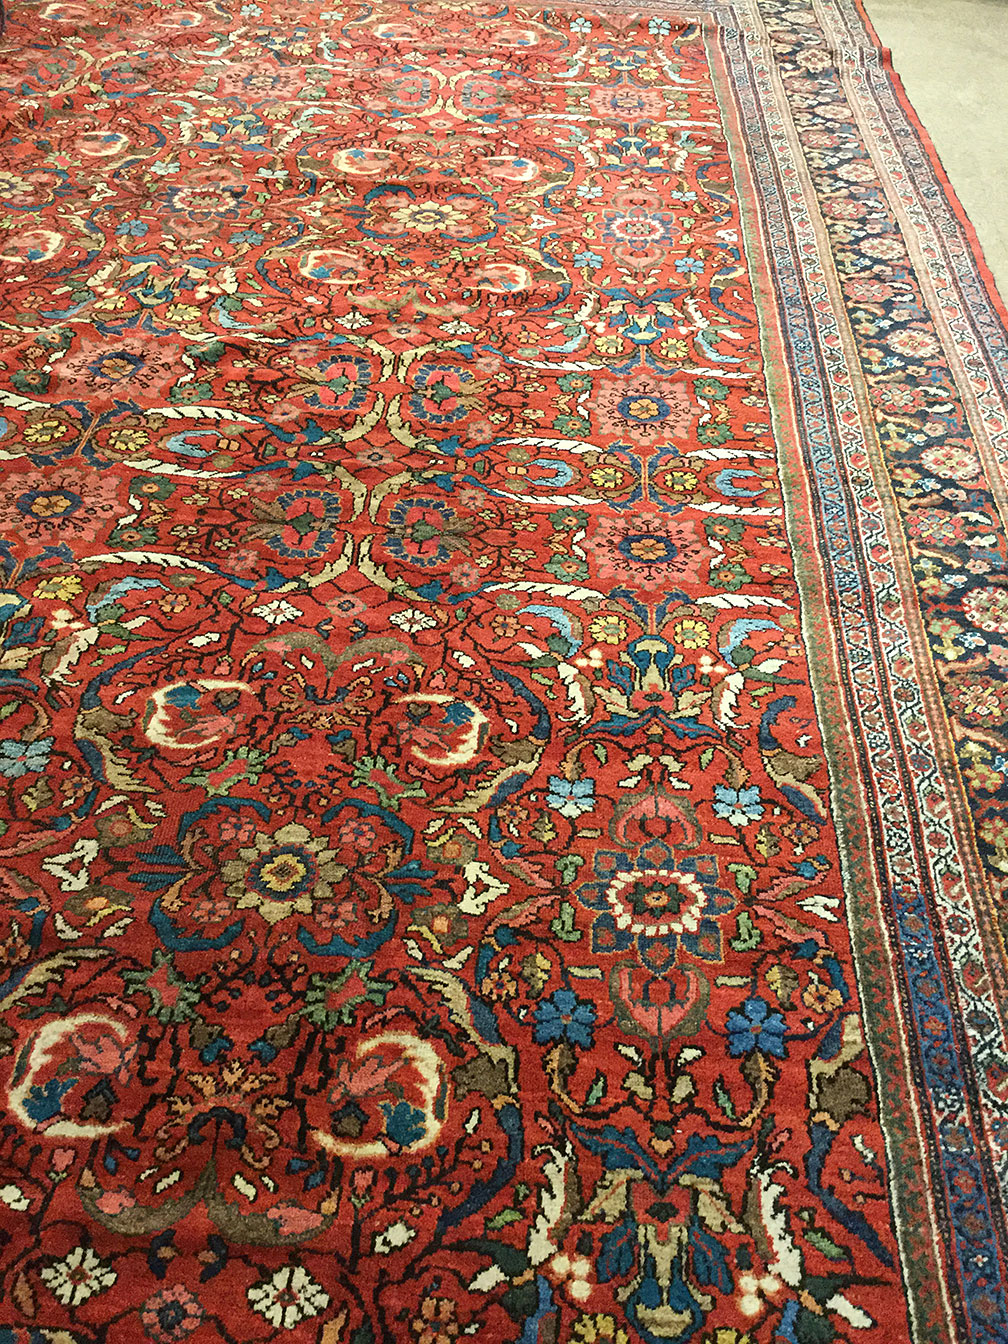 Antique mahal Carpet - # 52108